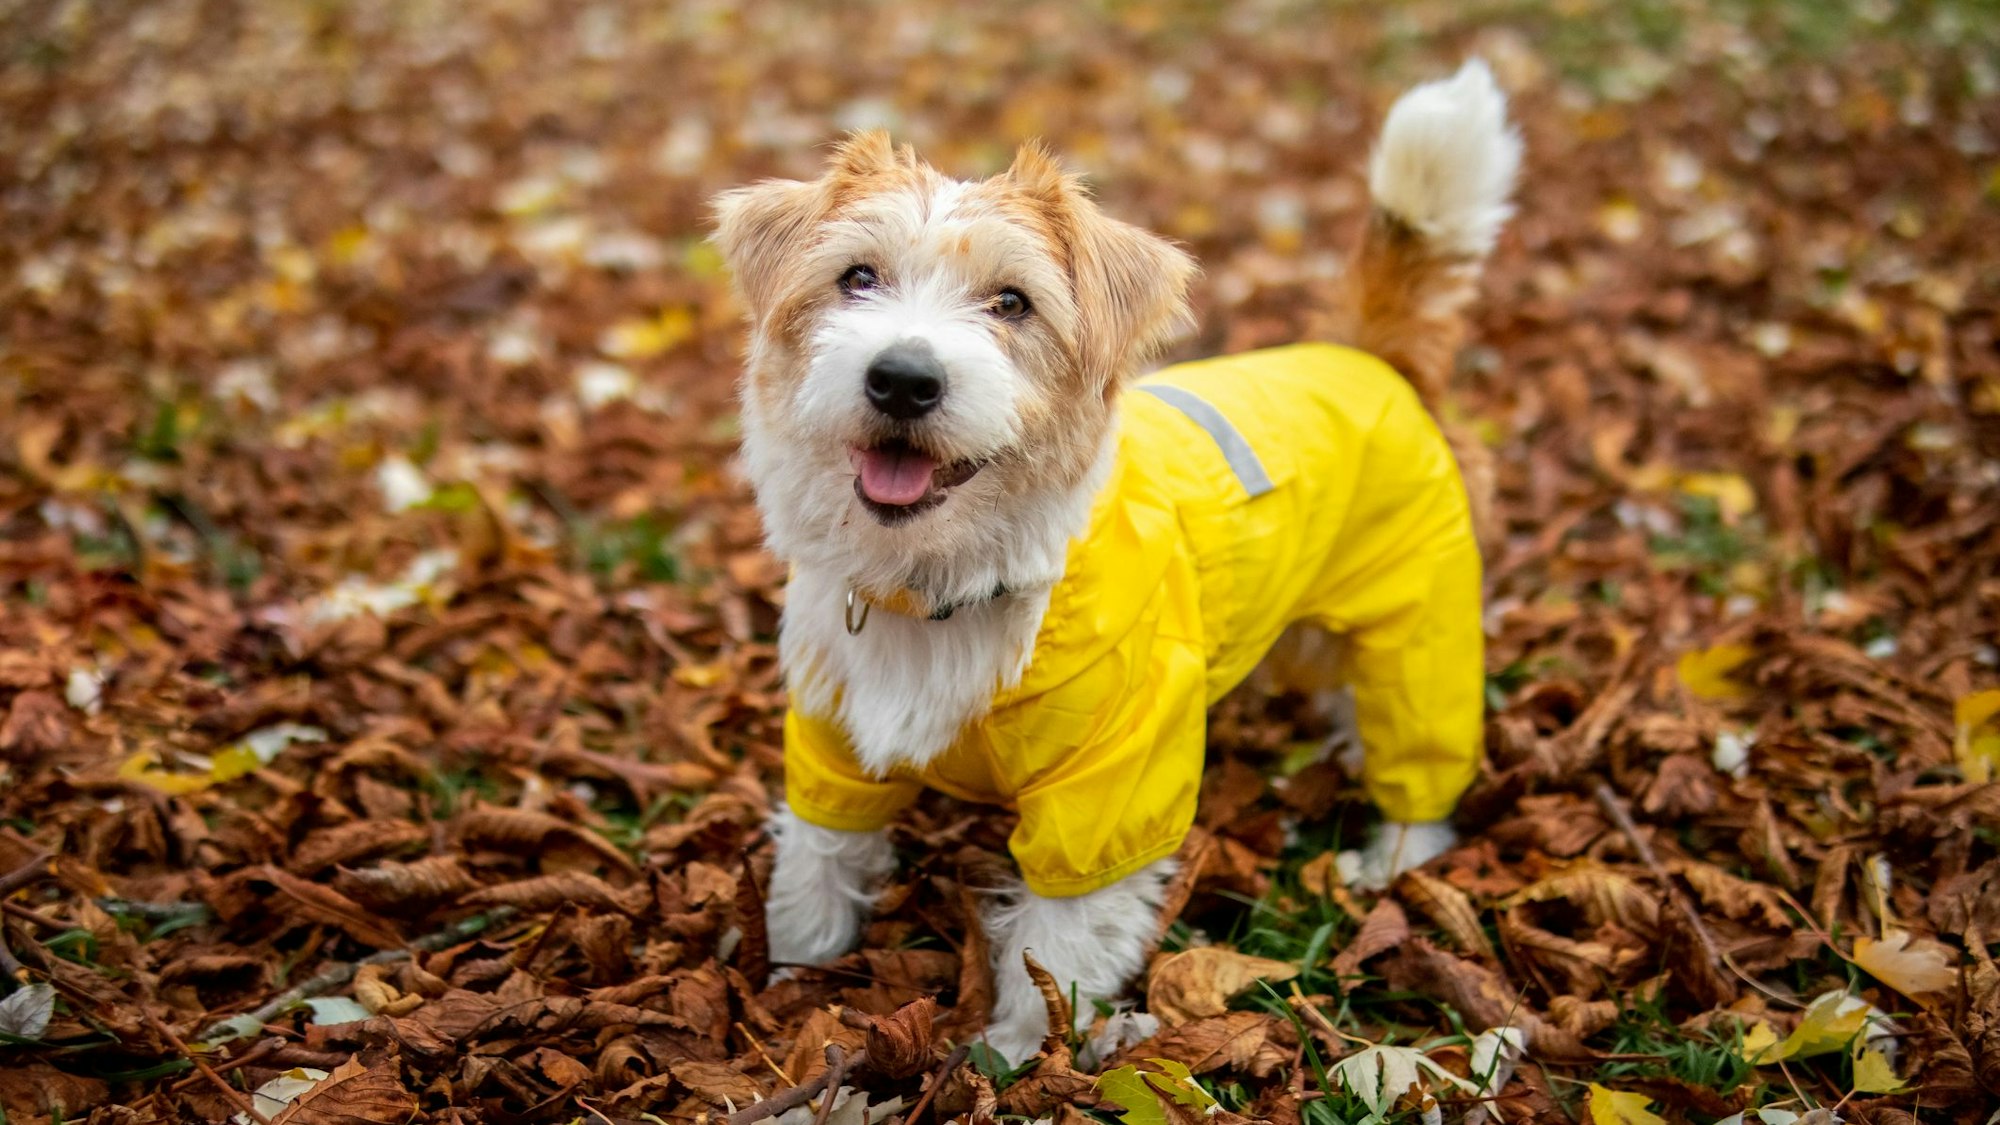 Ein Jack Russel Terrier trägt einen gelben Regenmantel.